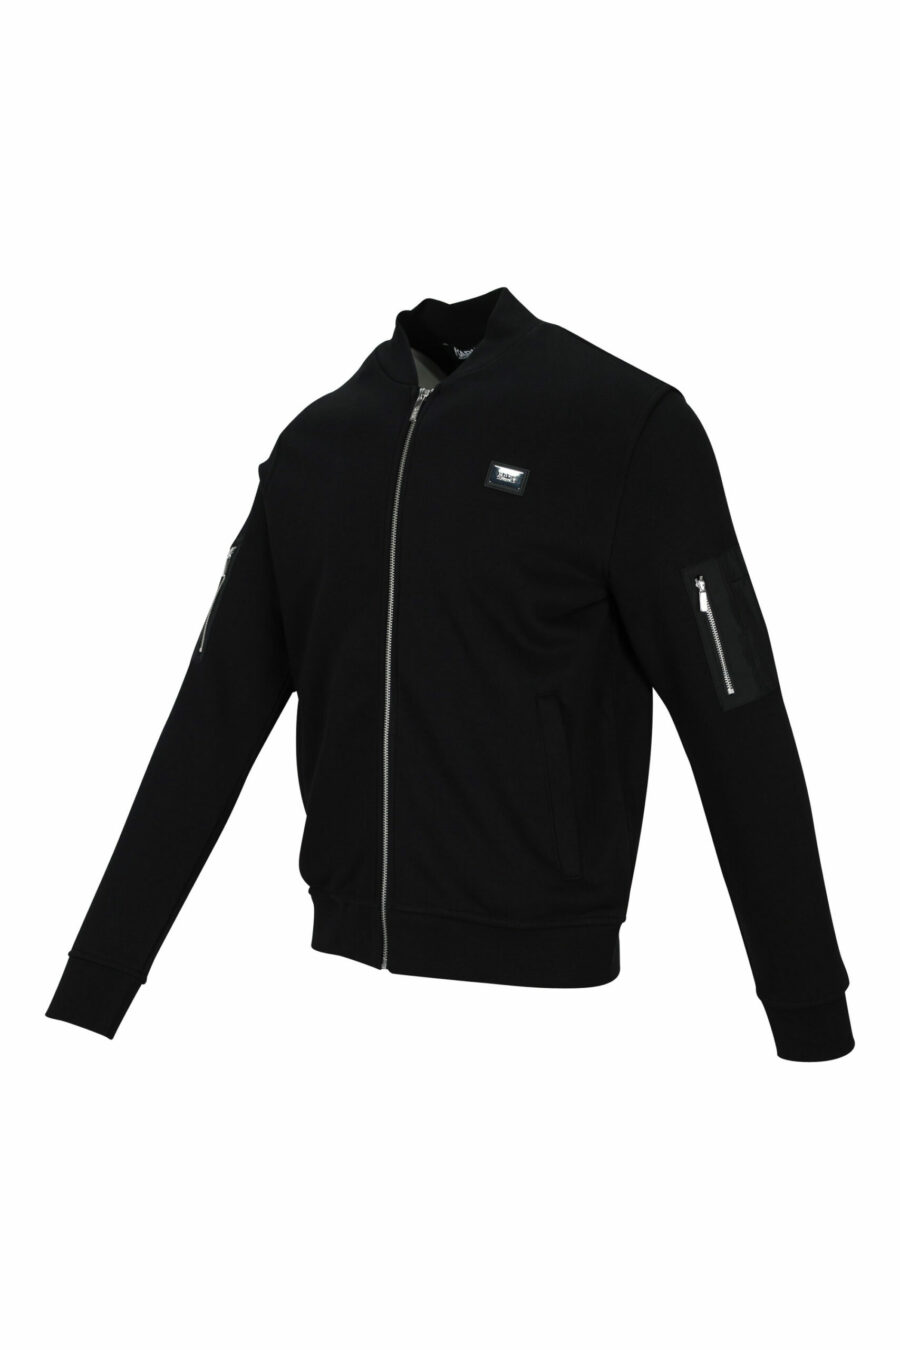 Schwarze Jacke mit Mini-Logo auf Abzeichen und Ärmeltaschen - 4062226654111 1 skaliert